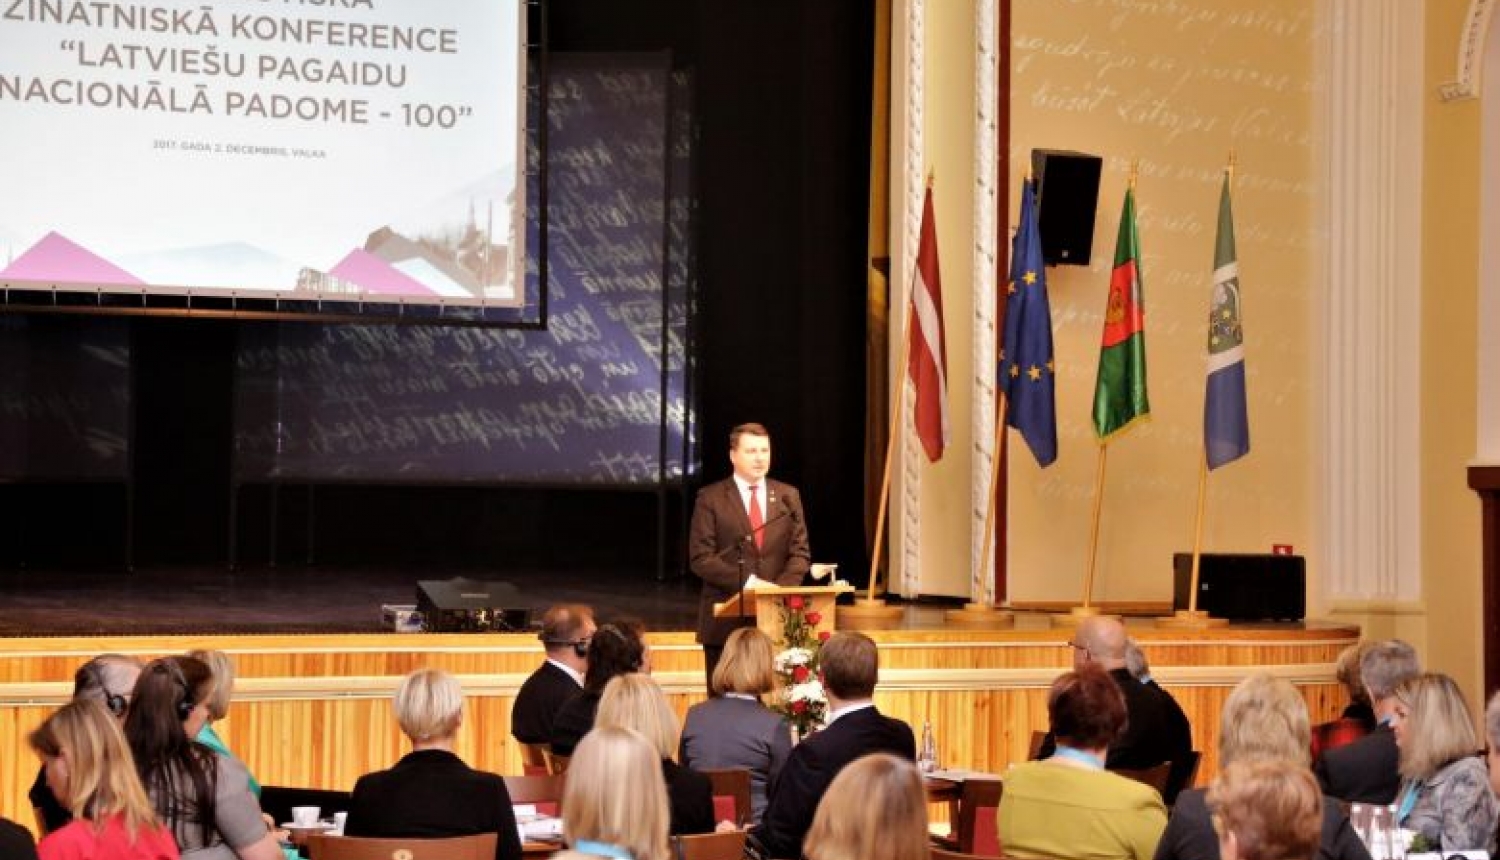 Valsts prezidenta uzruna Latviešu Pagaidu Nacionālās padomes simtgades konferencē Valkā